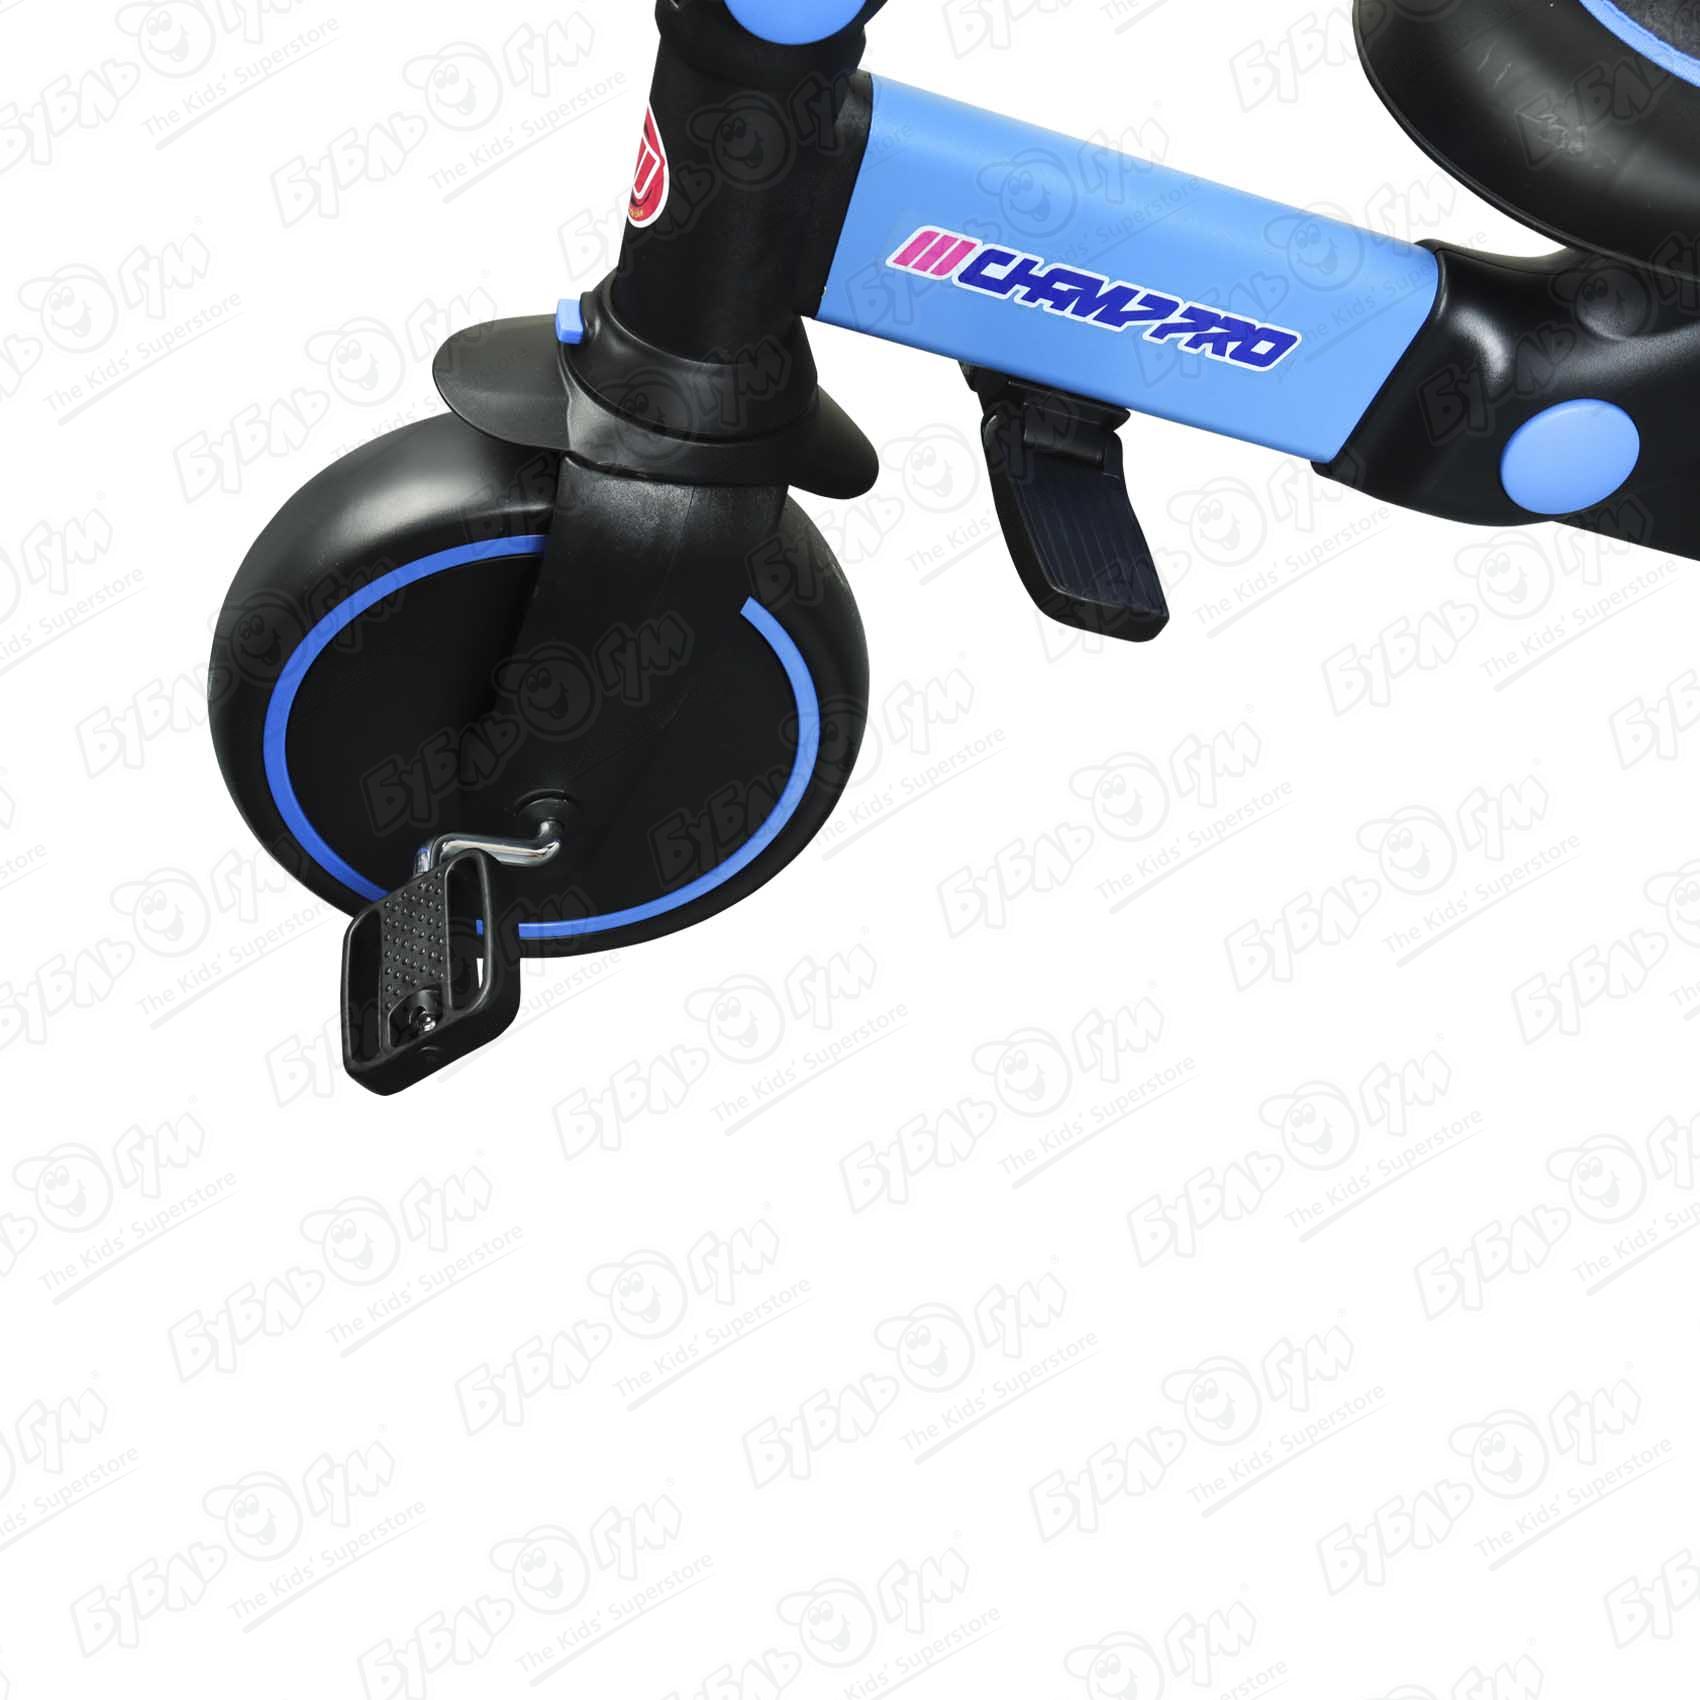 Велосипед трехколесный Champ Pro трансформер цвет синий - фото 10